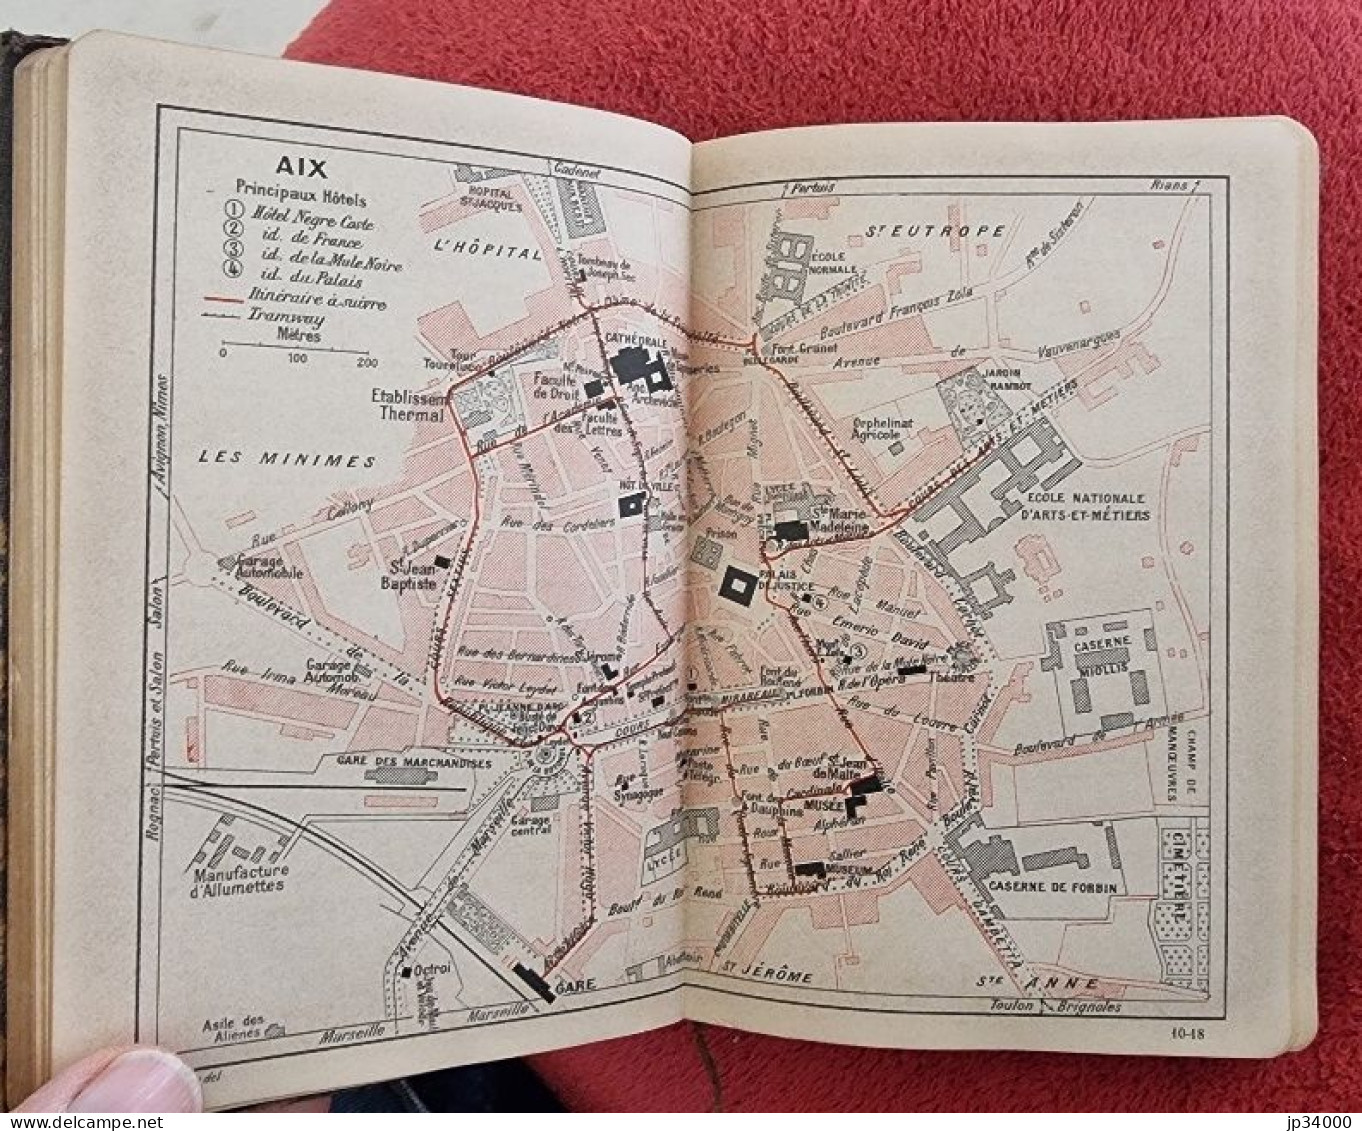 Guides Joanne Provence. Avec 59 cartes et 33 plans  (Hachette, 1914)